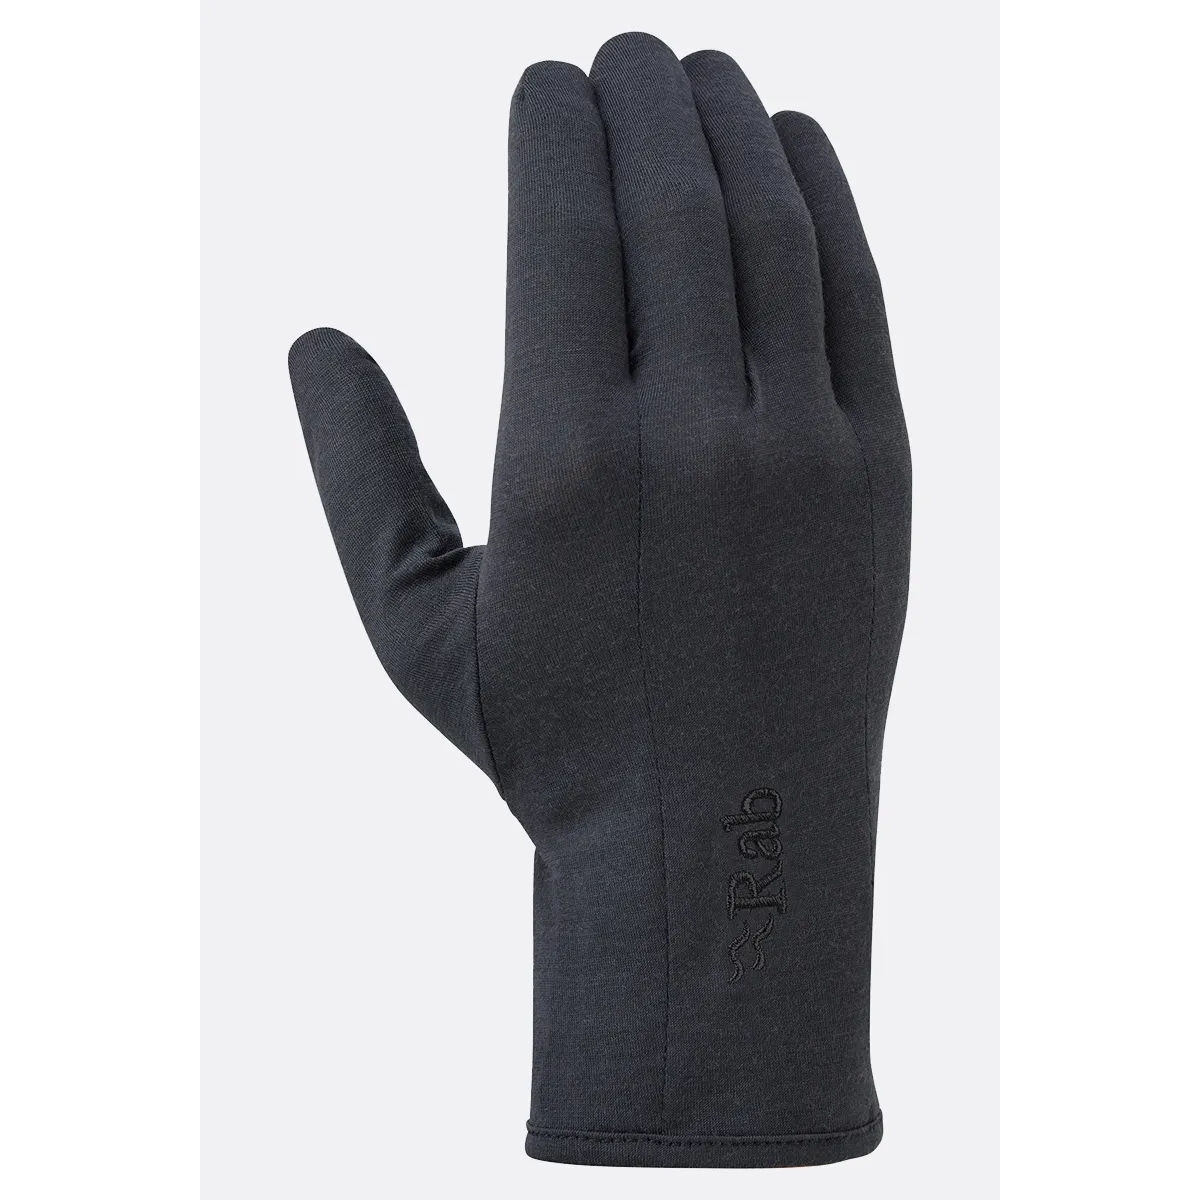 Rab Forge 160 Glove